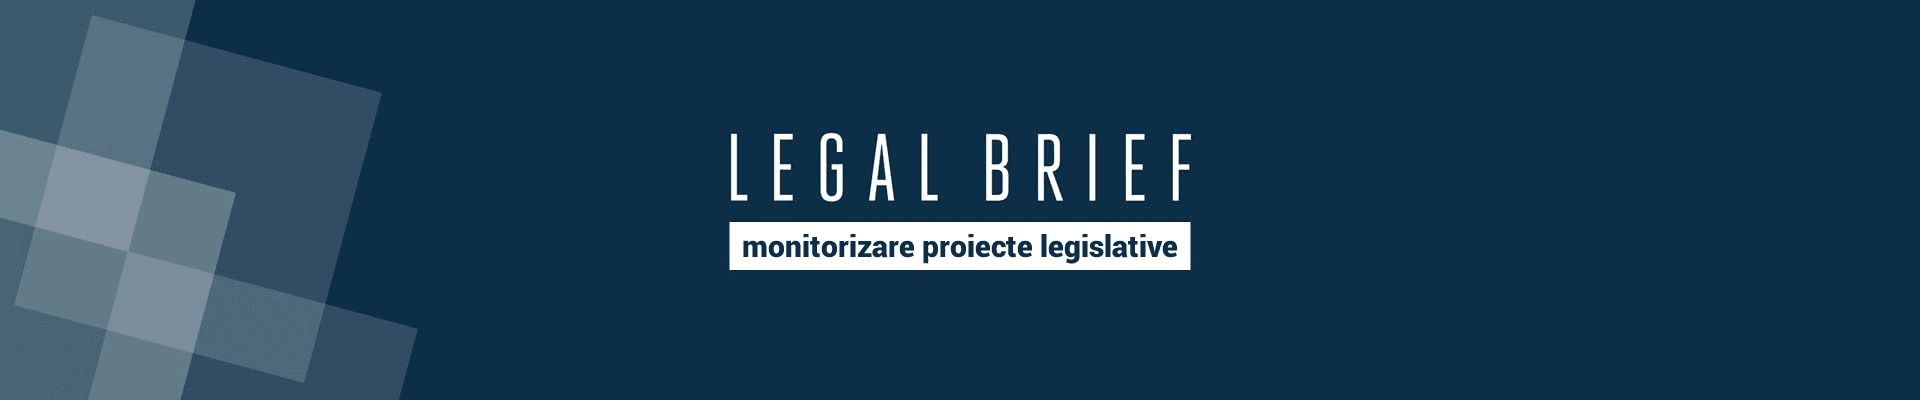 LELAG BRIEF - monitorizare proiecte legislative